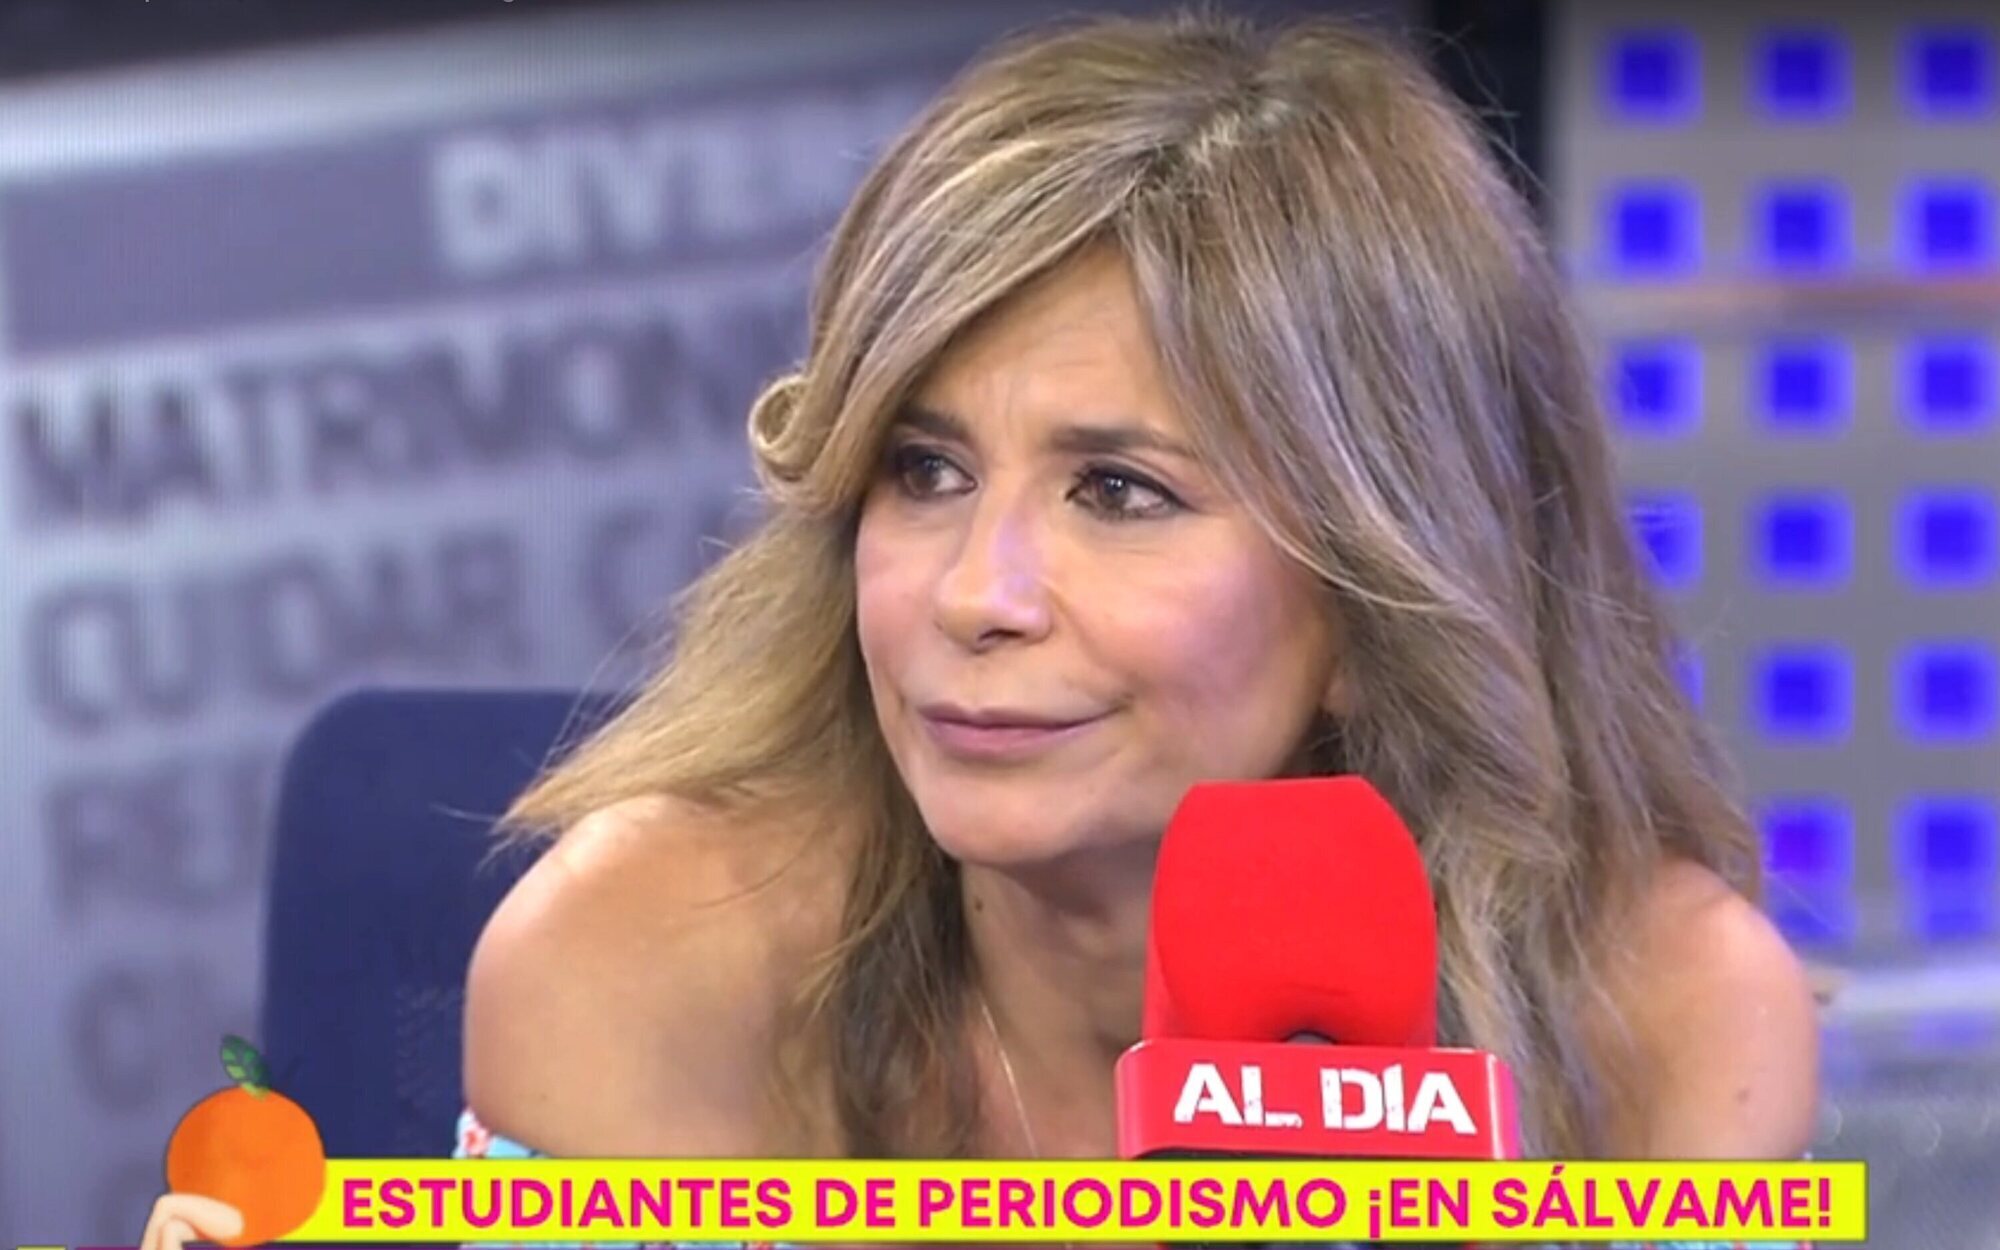 La tremenda pulla de Gema López a Telecinco: "Una cadena sin 'Sálvame' a lo mejor se tiene que salvar"